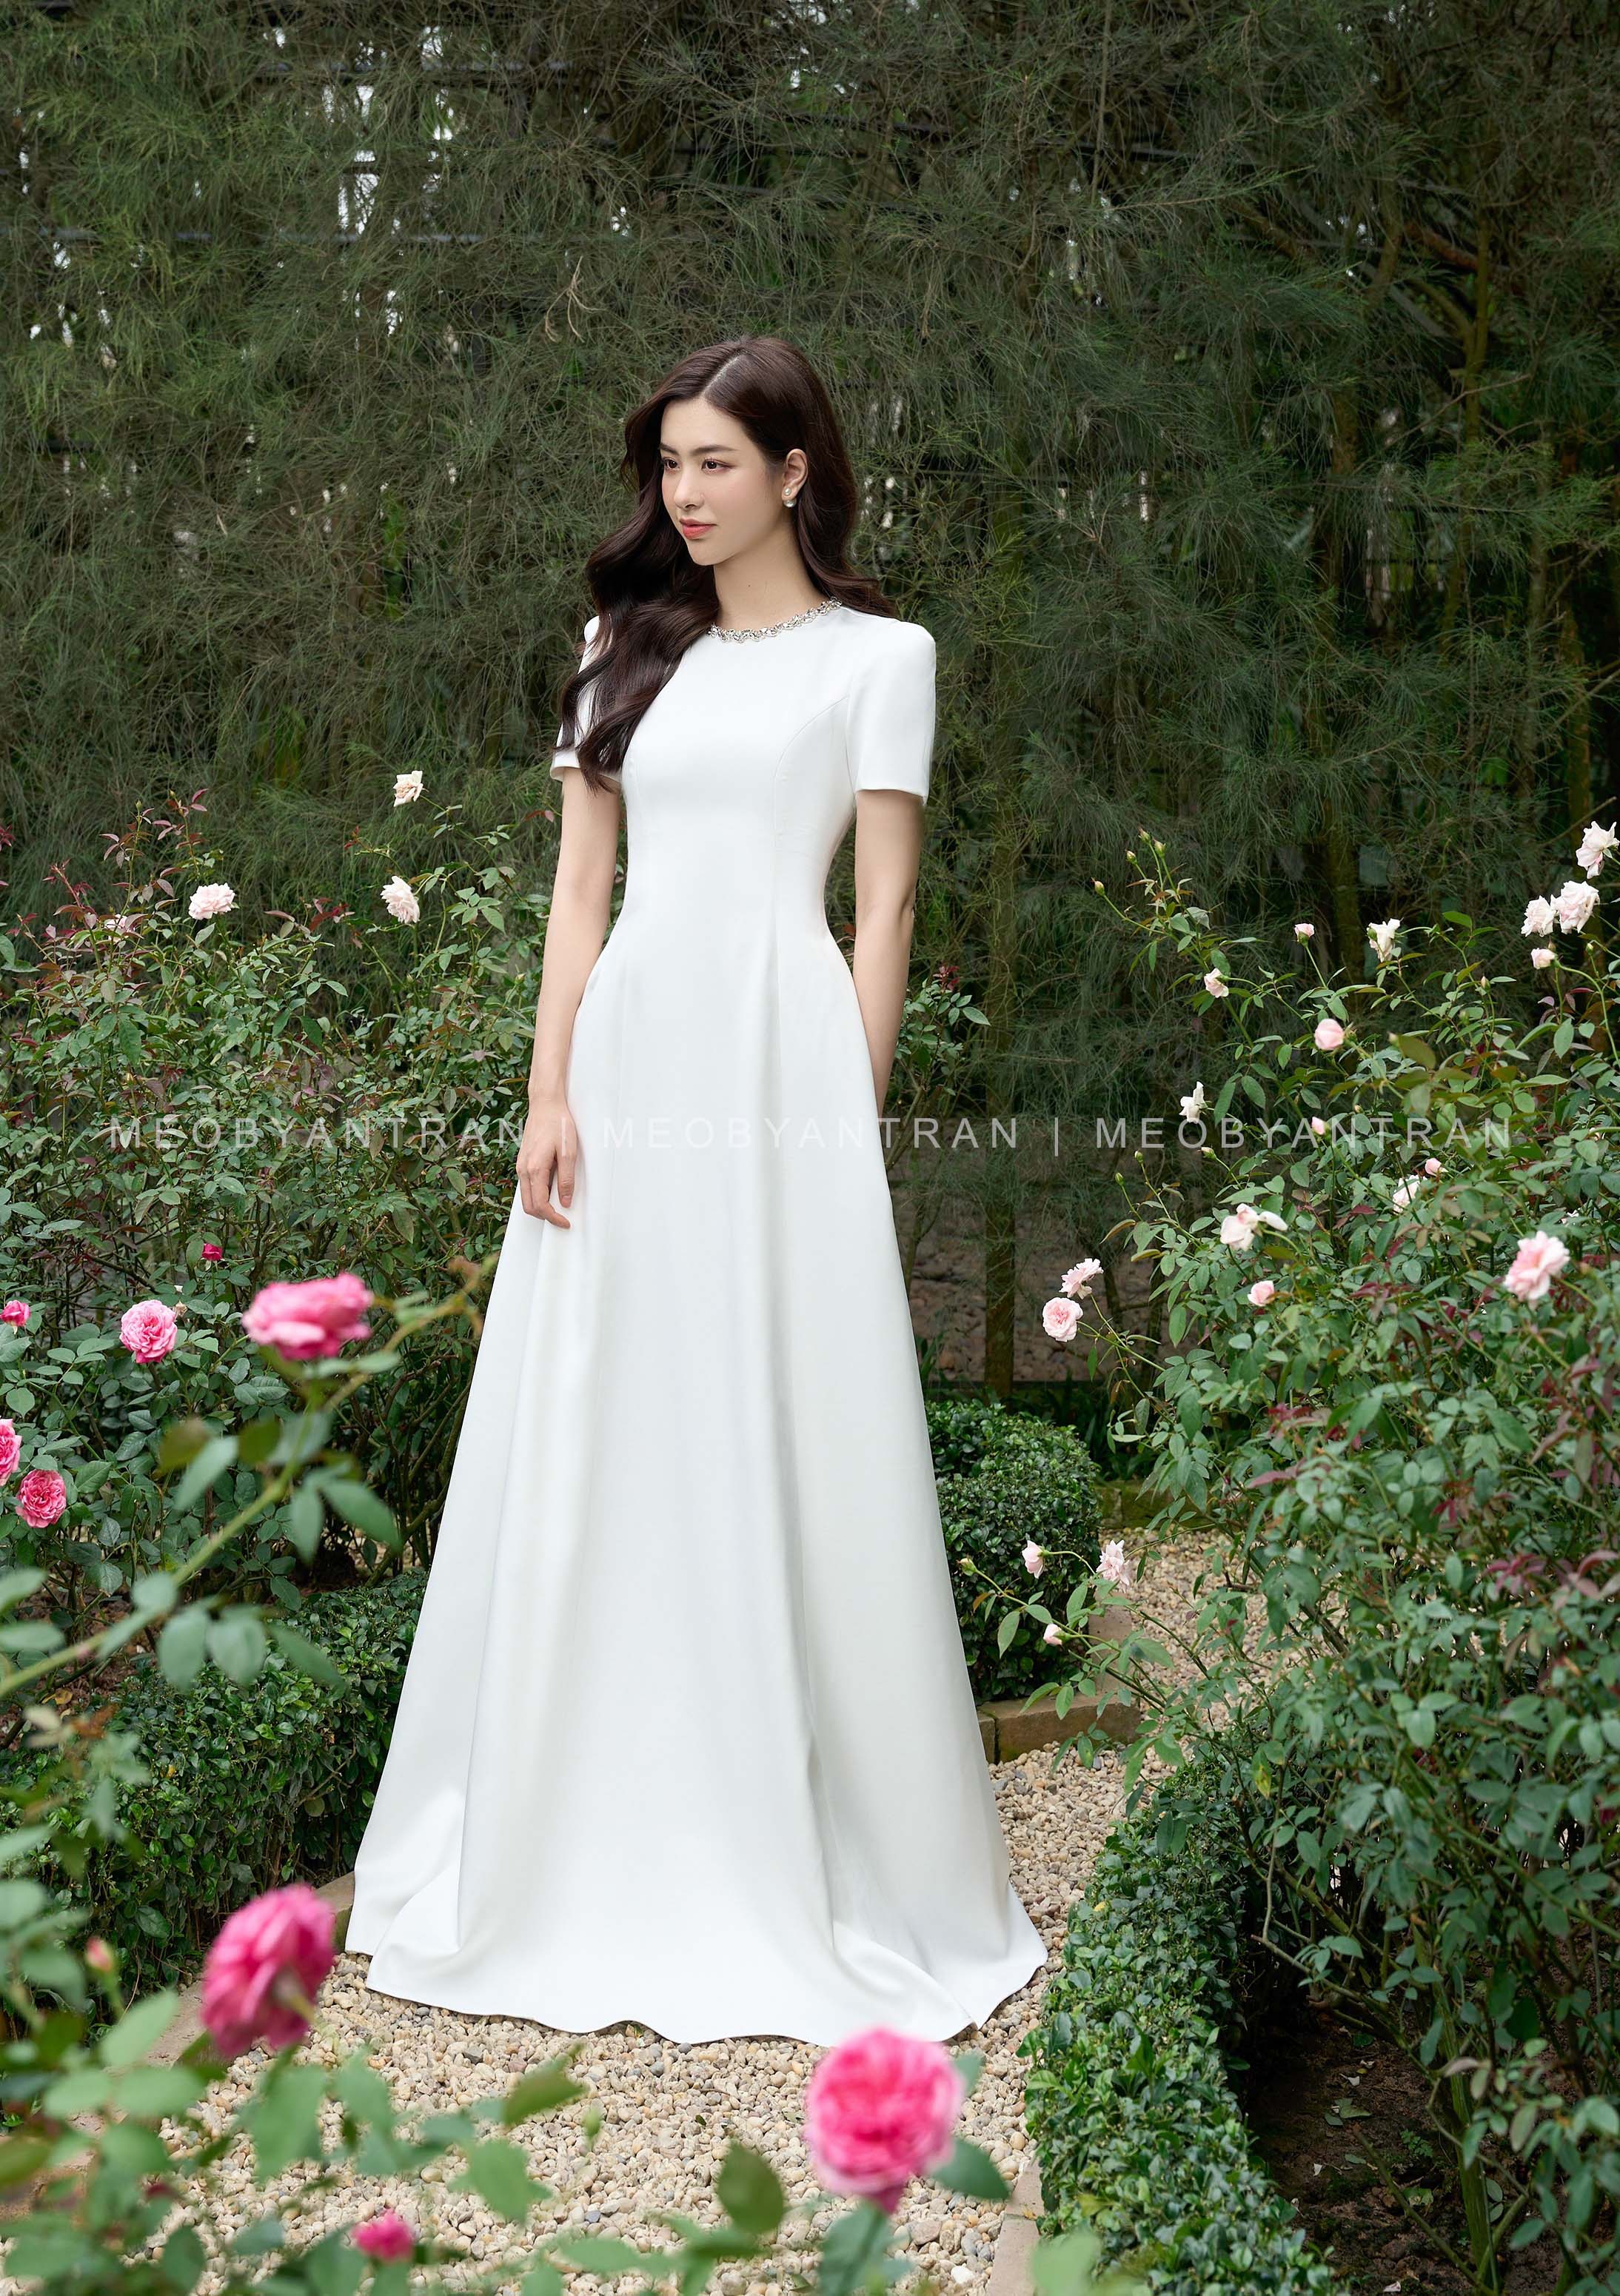 Top 10 mẫu váy cưới đẹp đơn giản rất được lòng các cô dâu hiện nay